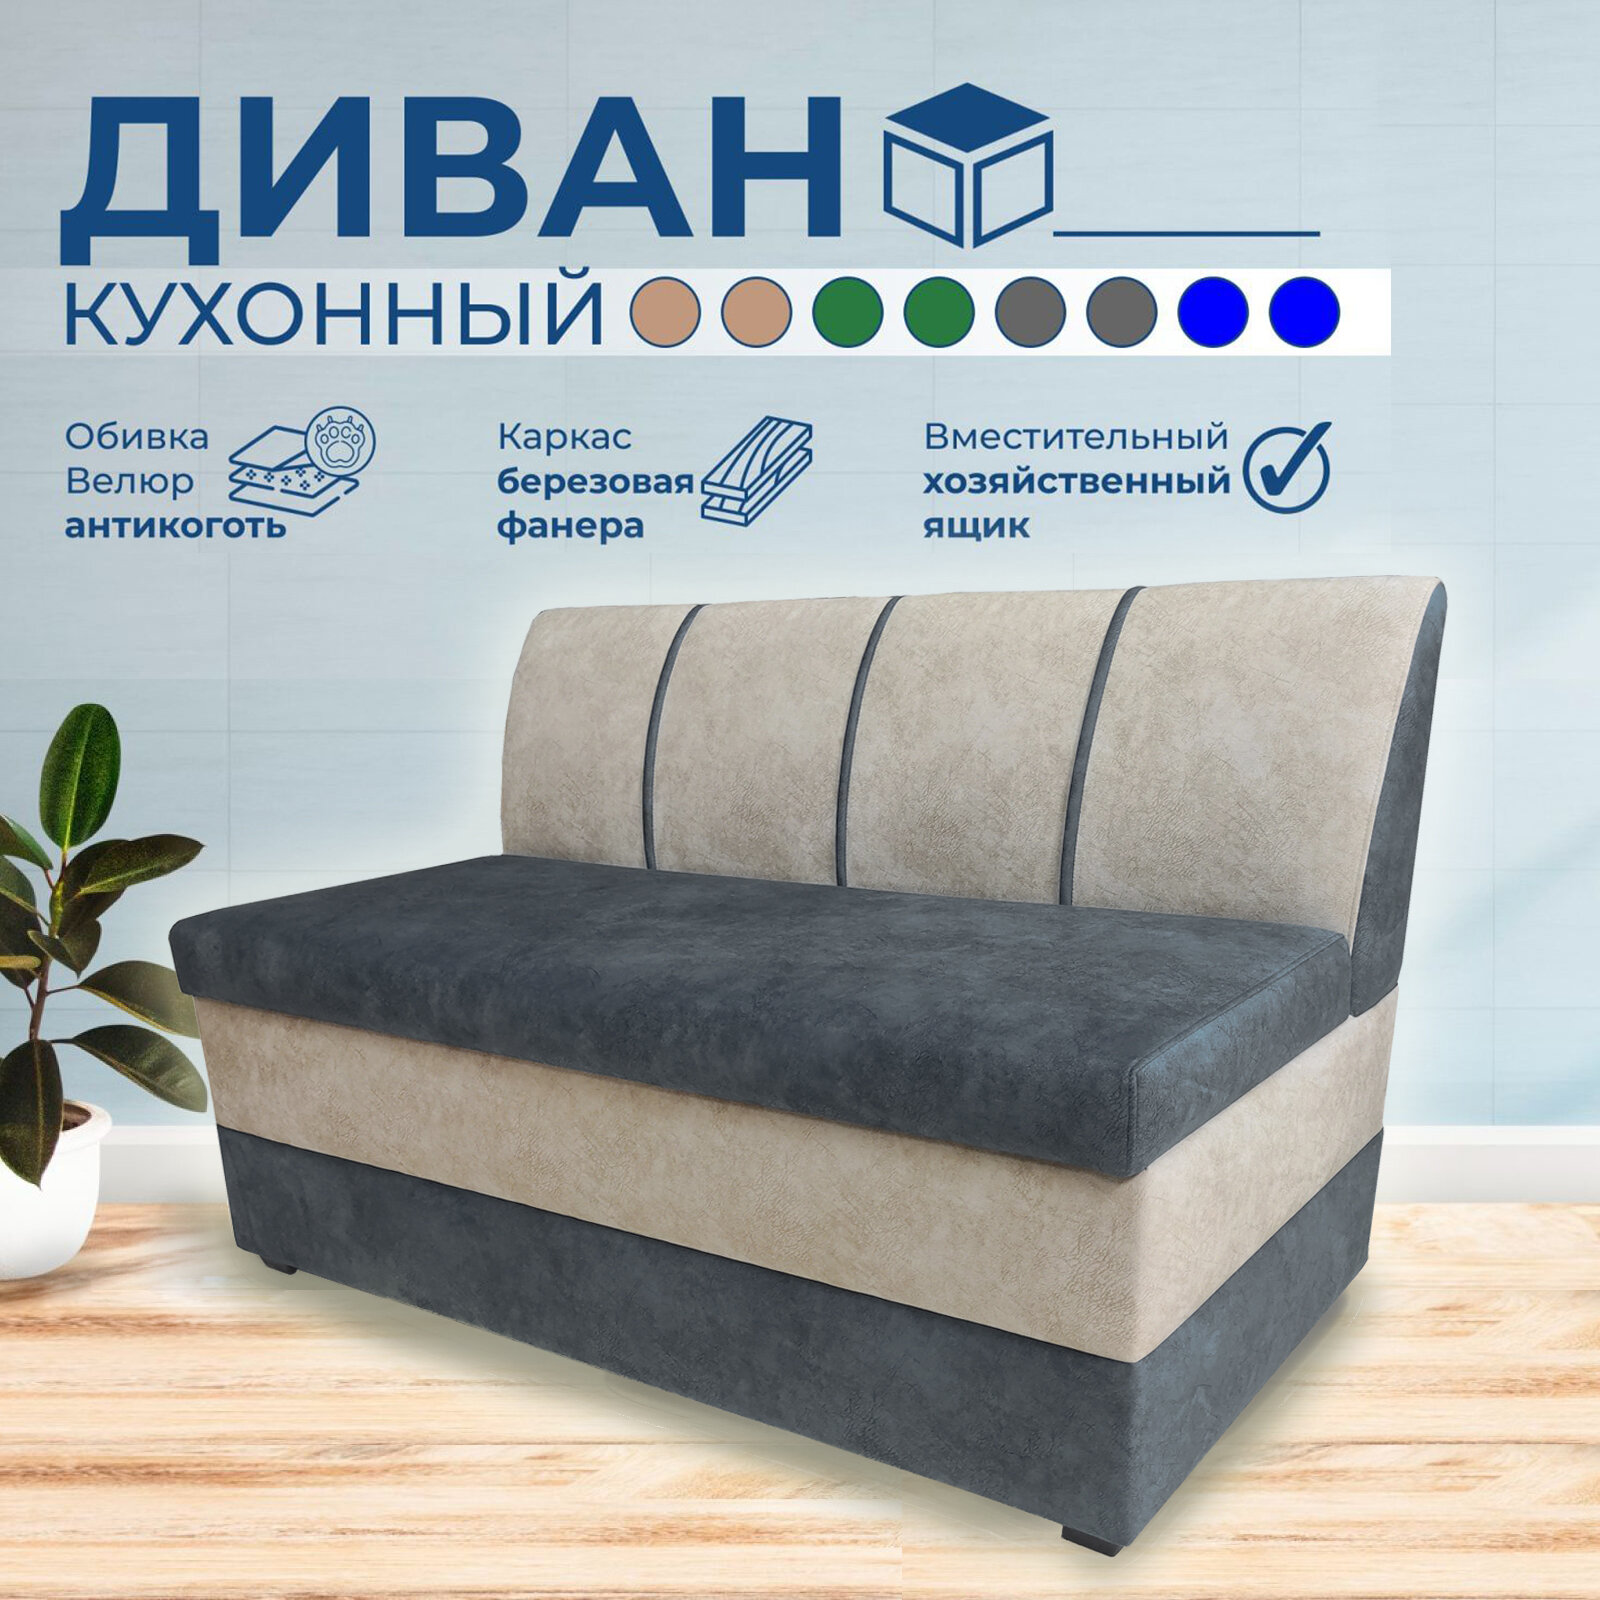 Кухонный диван Форум-8 (100см) Серый